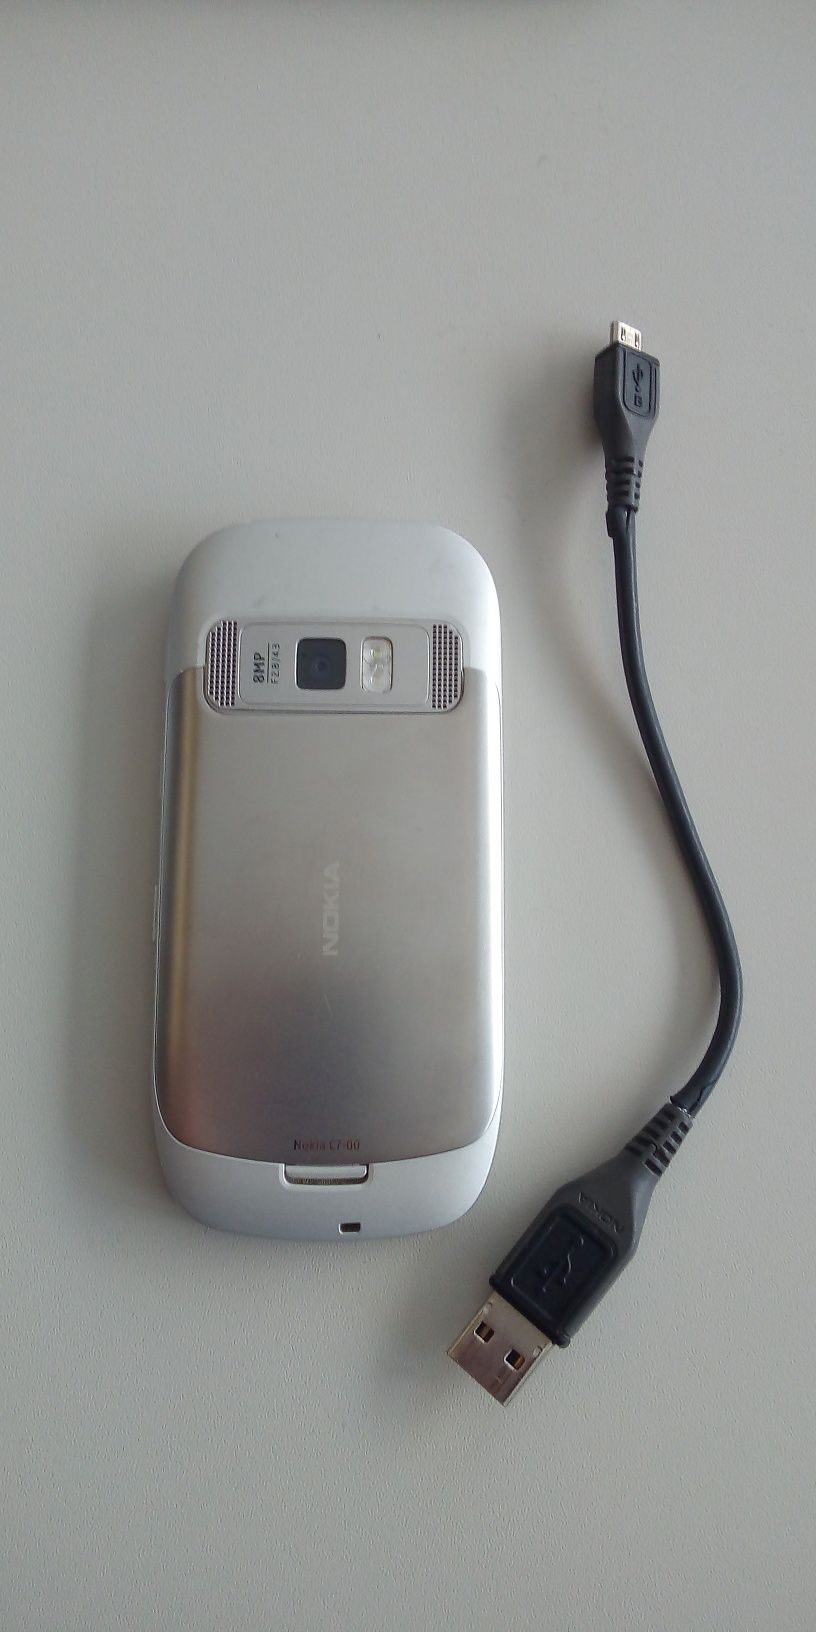 Nokia C7 и Е52 БАРТЕР